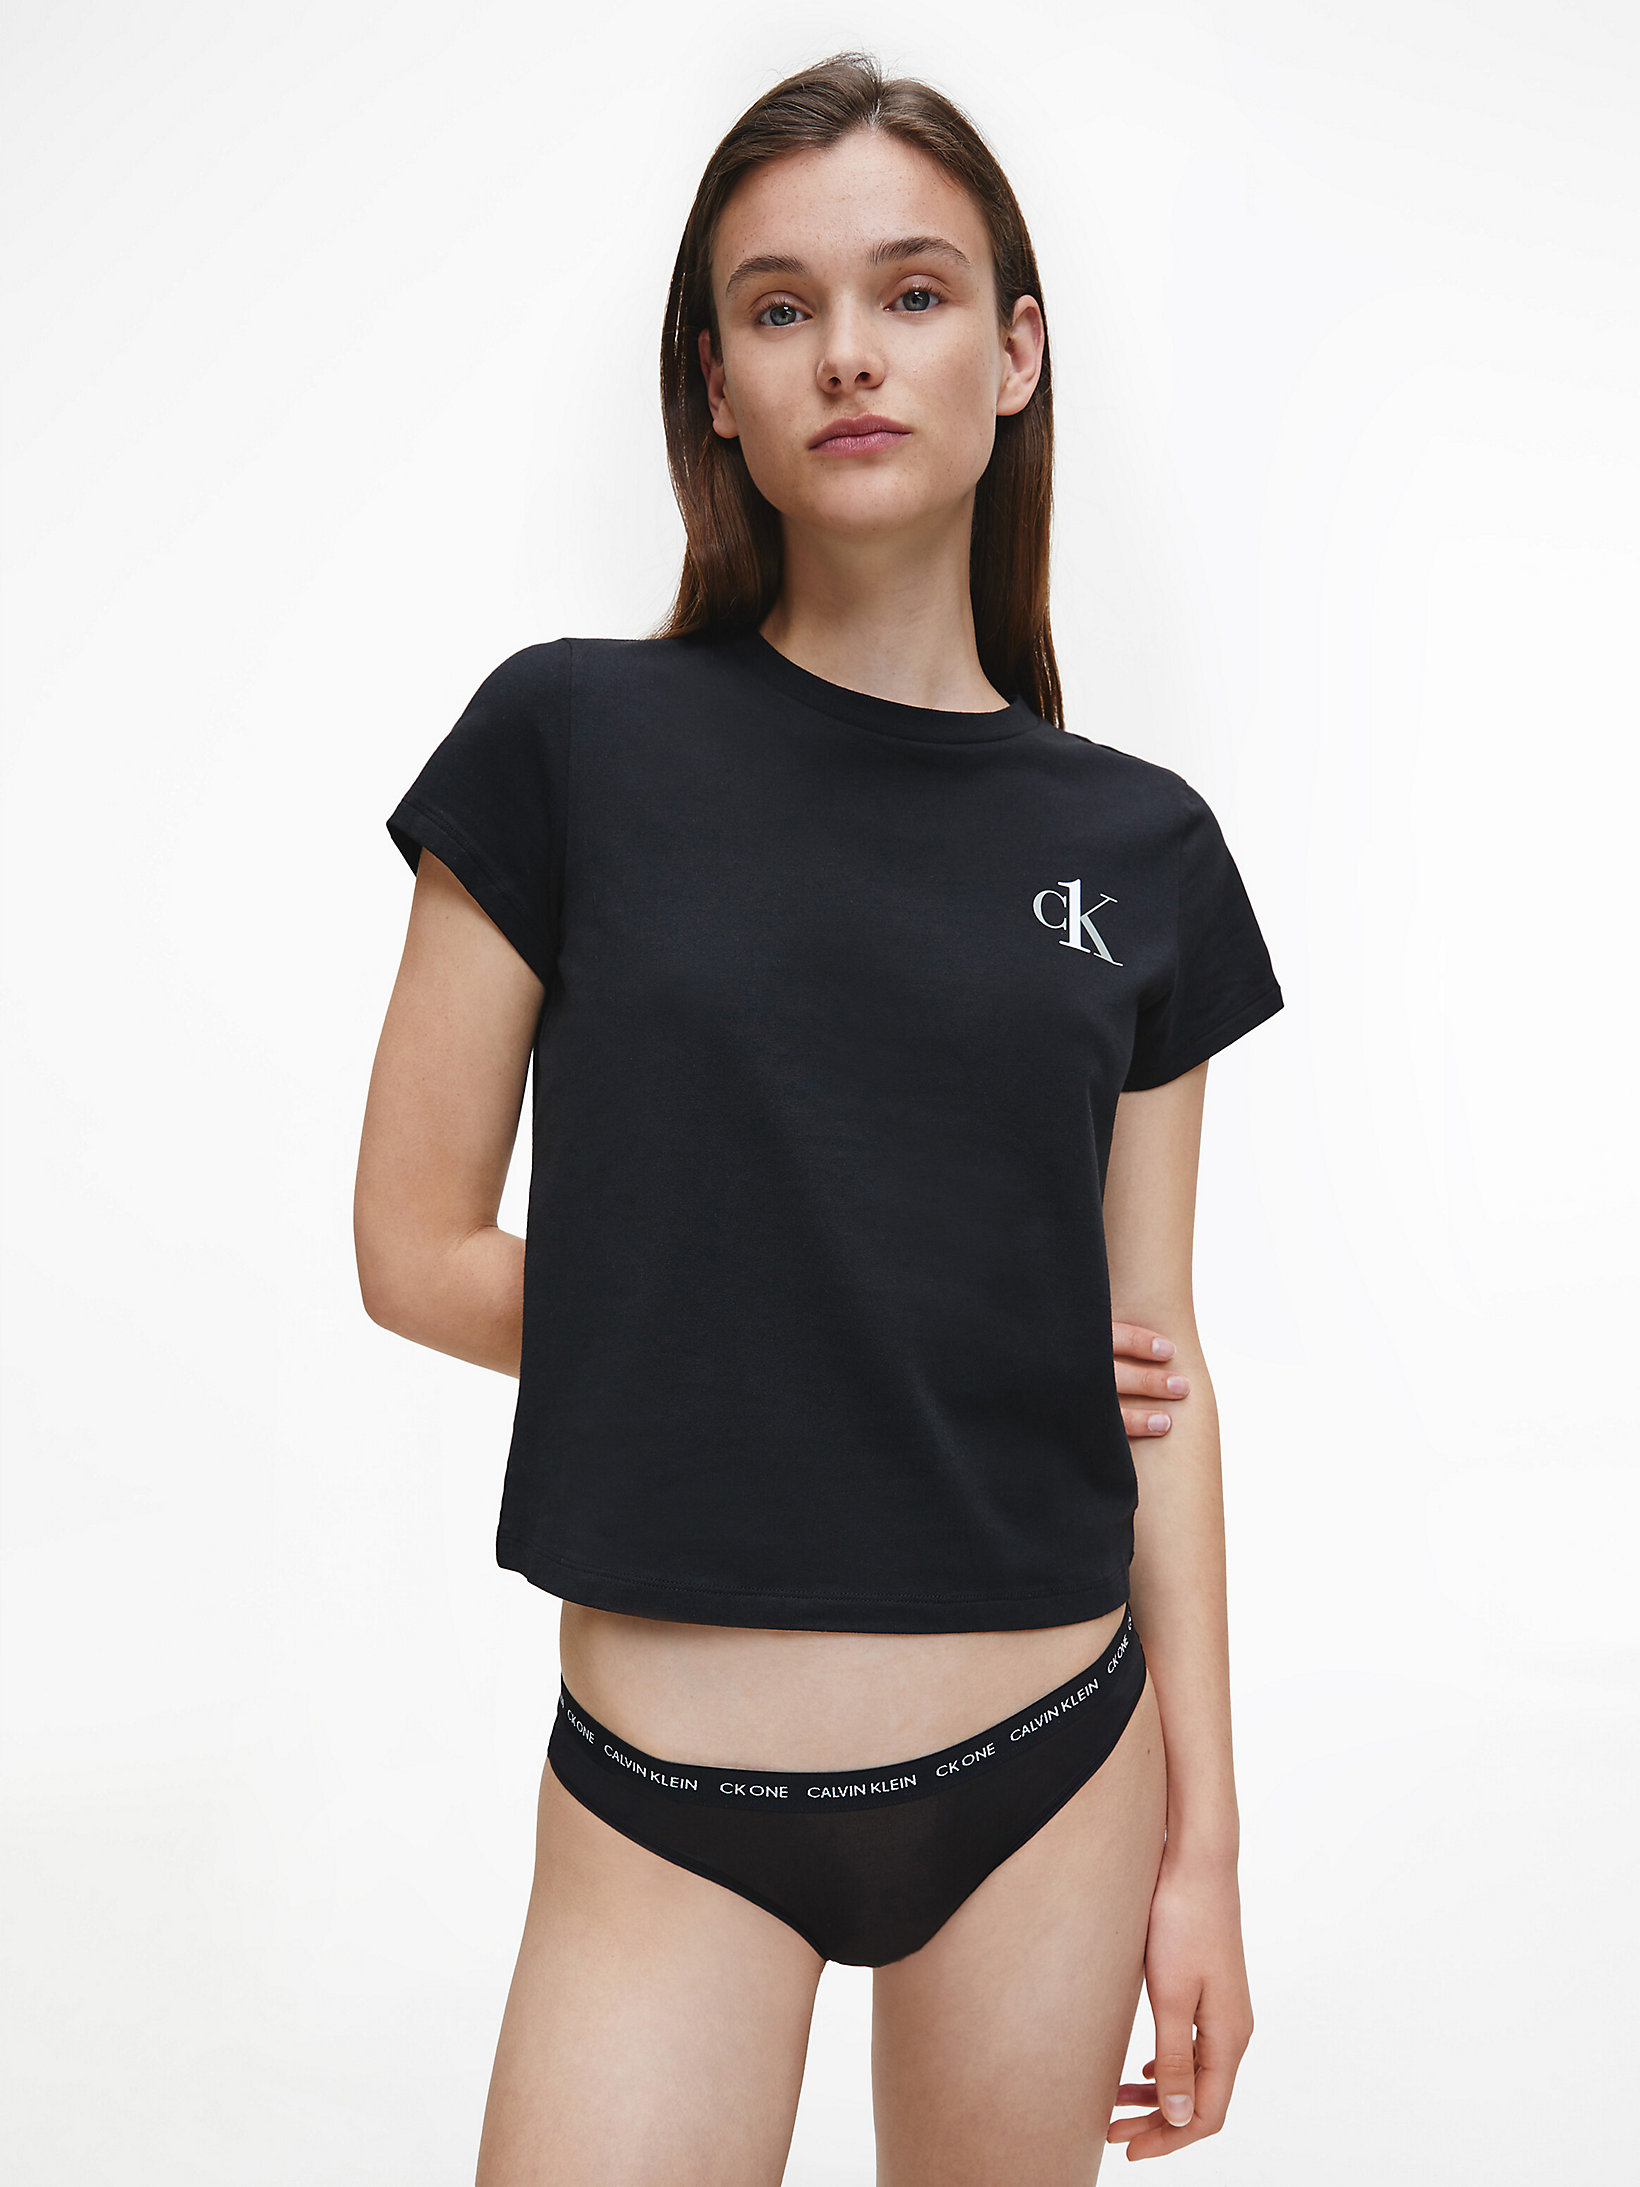 Black Lounge T-Shirt - CK One undefined women Calvin Klein